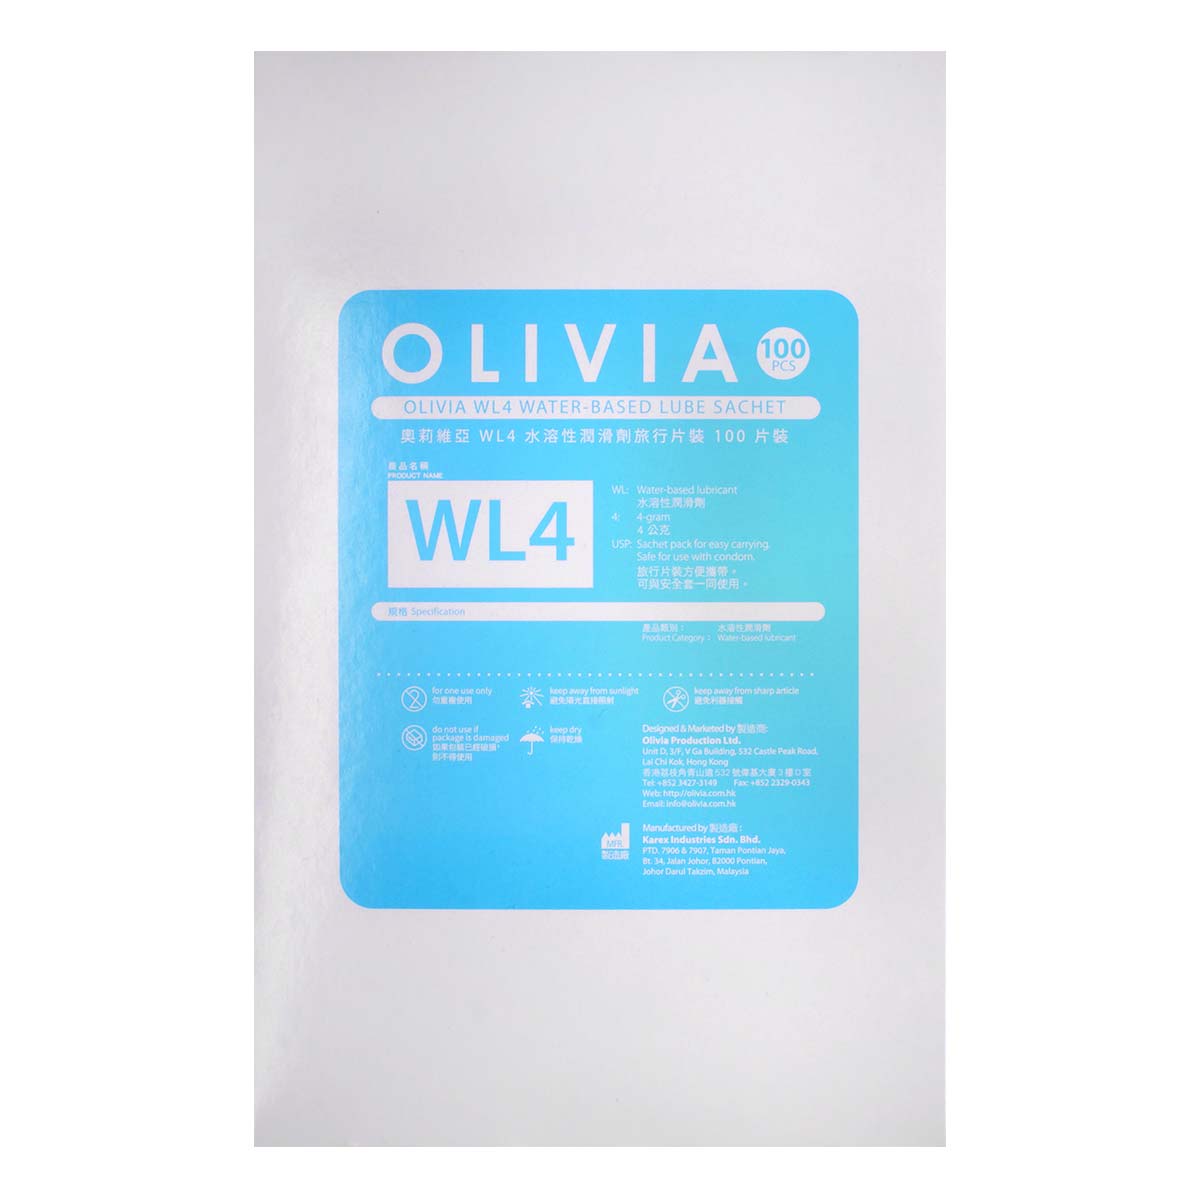 オリヴィア WL4 小袋 100 個入 水性潤滑ゼリー (使用期限 2022 年 10 月)-p_3